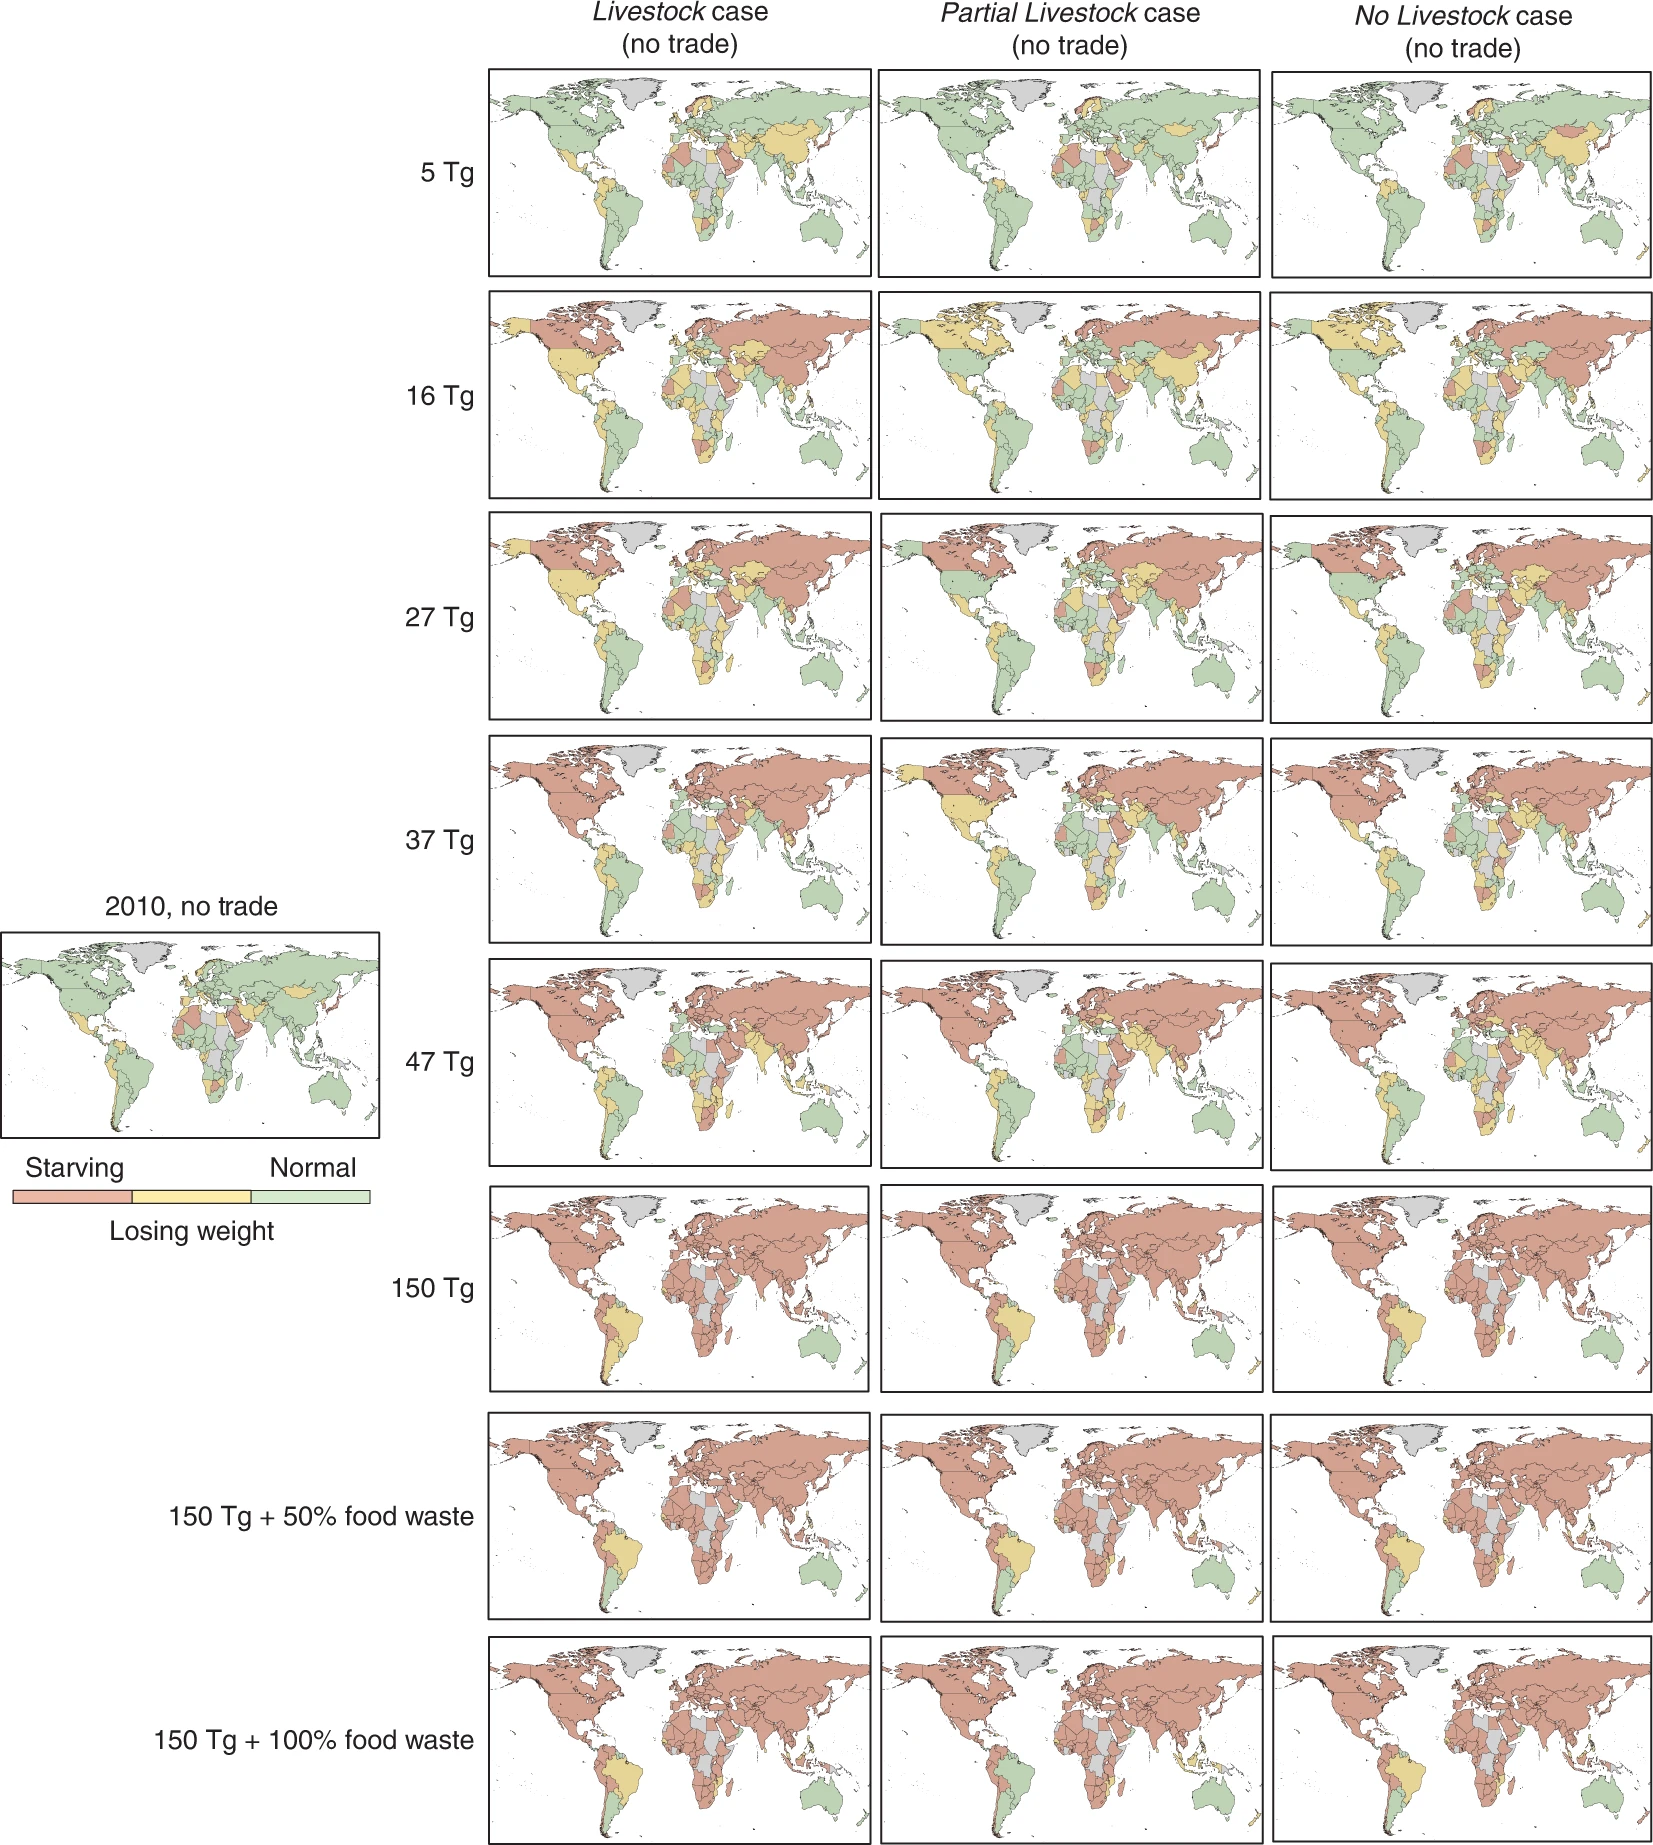 Mapa hecho por los investigadores que muestra el nivel de hambre que habría en el mundo según la alimentación para el ganado que se destine a alimentación humana